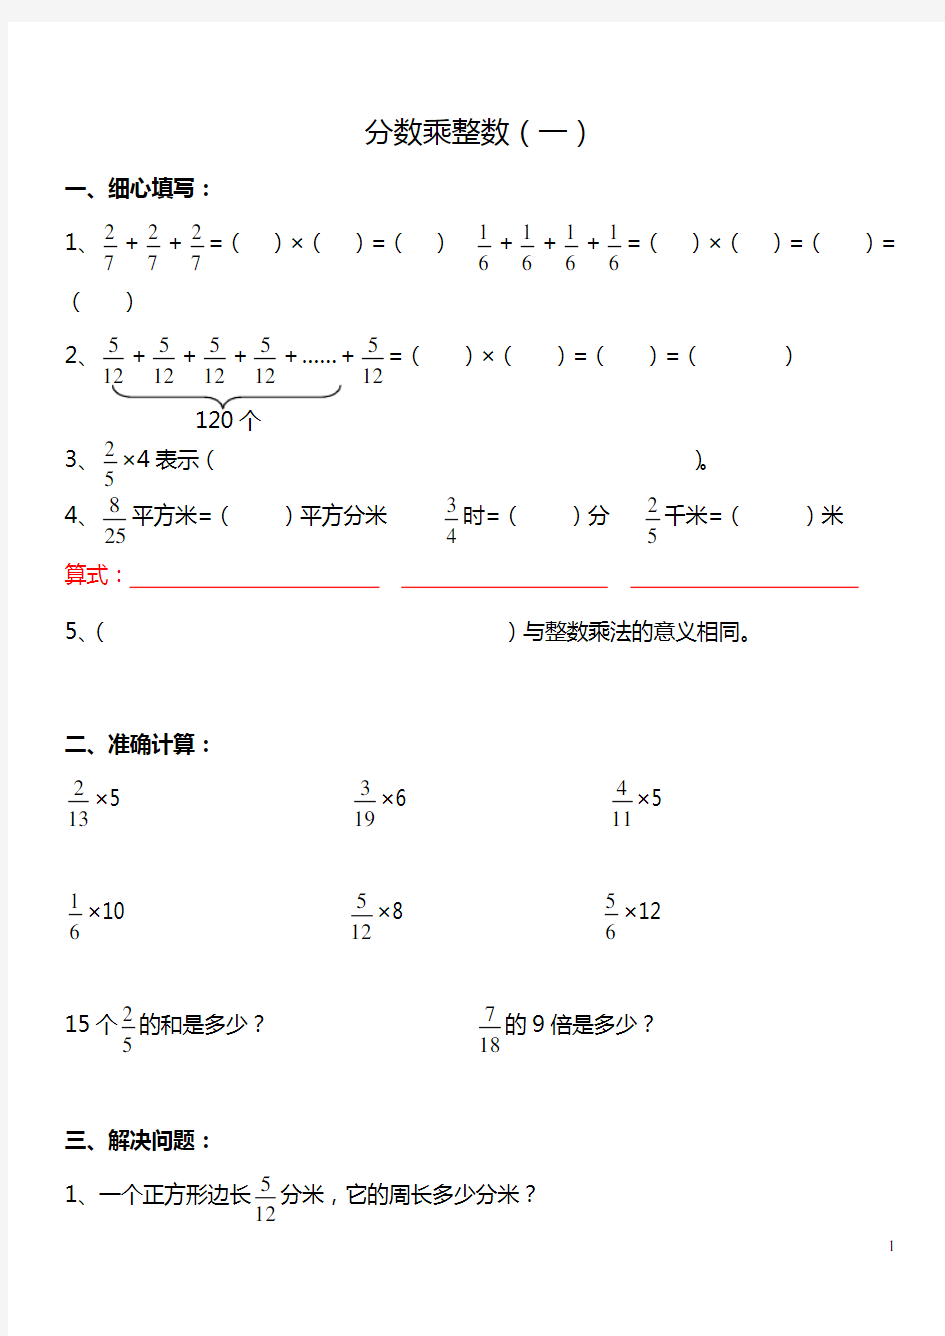 分数乘法练习题全套(整理打印版)